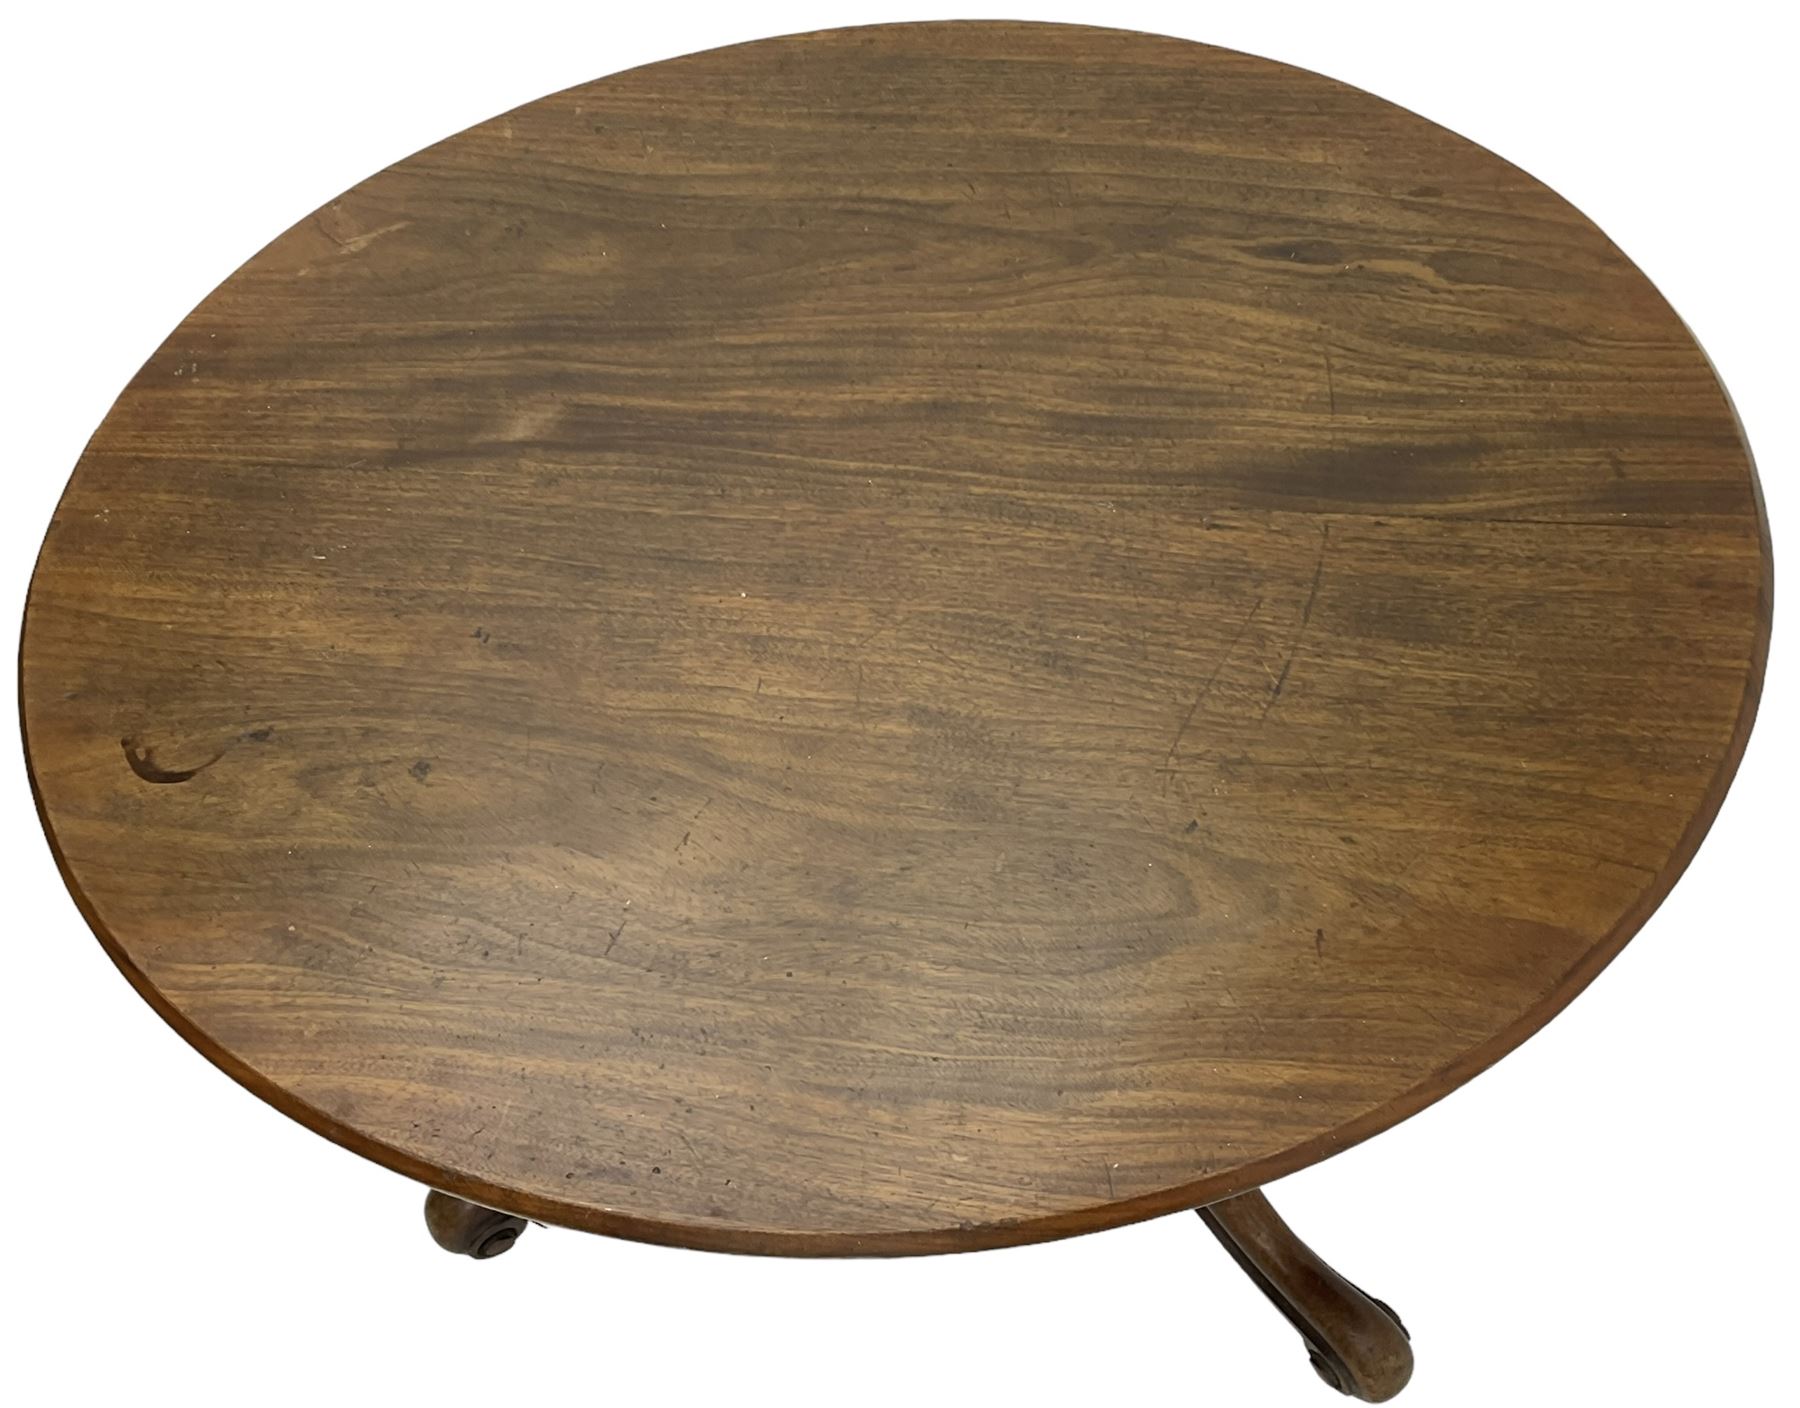 19th century mahogany loo table - Image 4 of 7